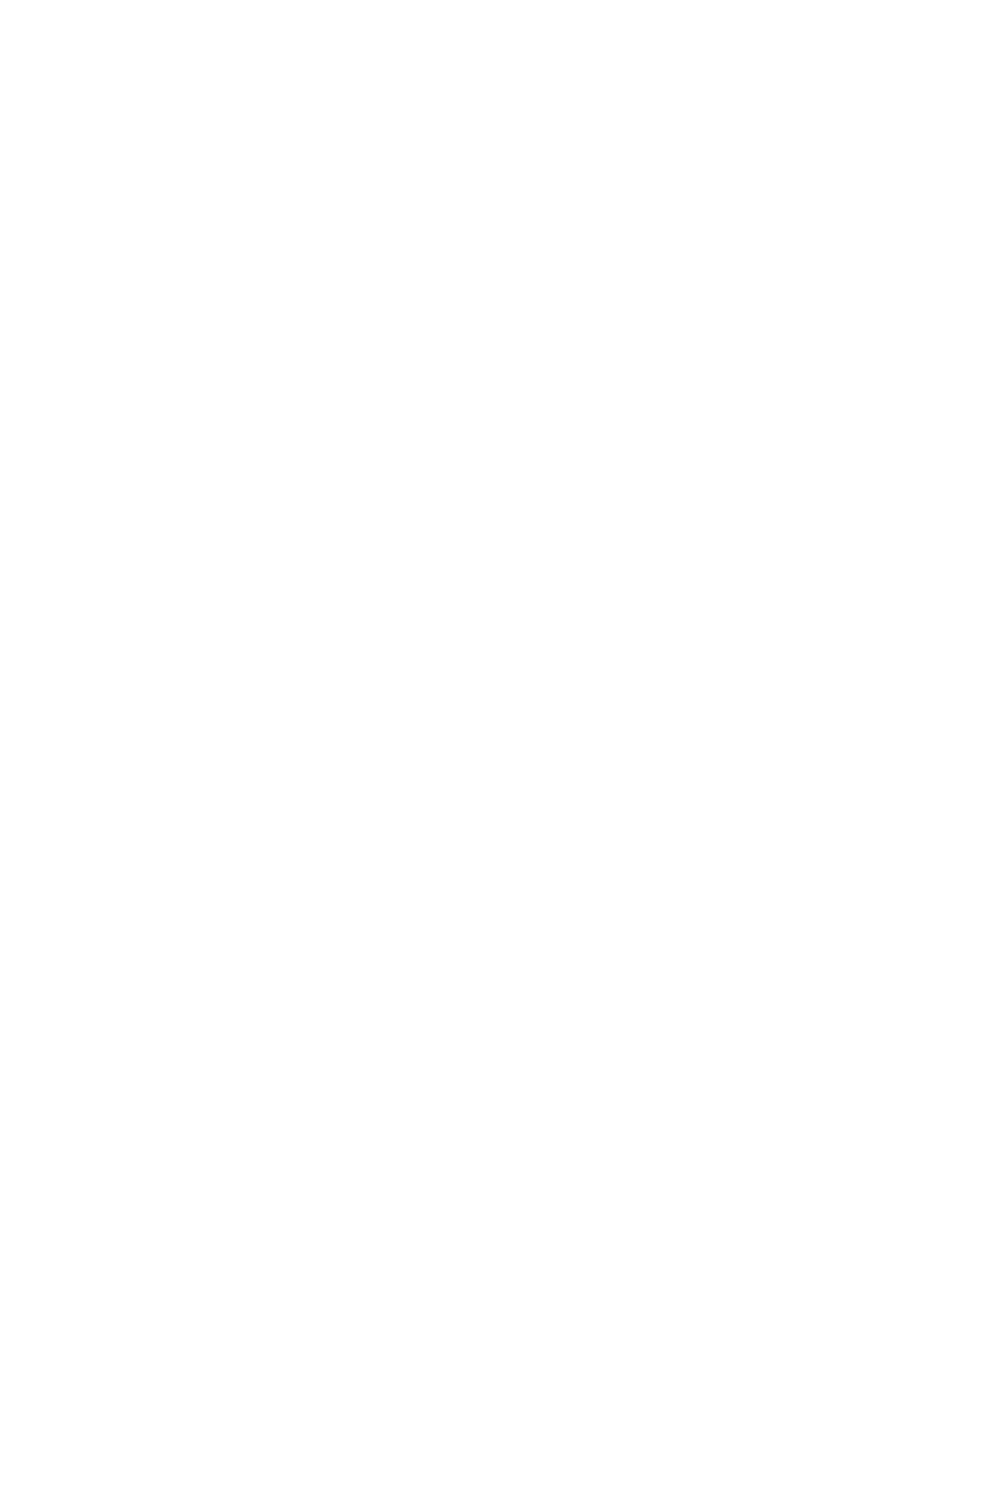 FactSet logo for dark backgrounds (transparent PNG)